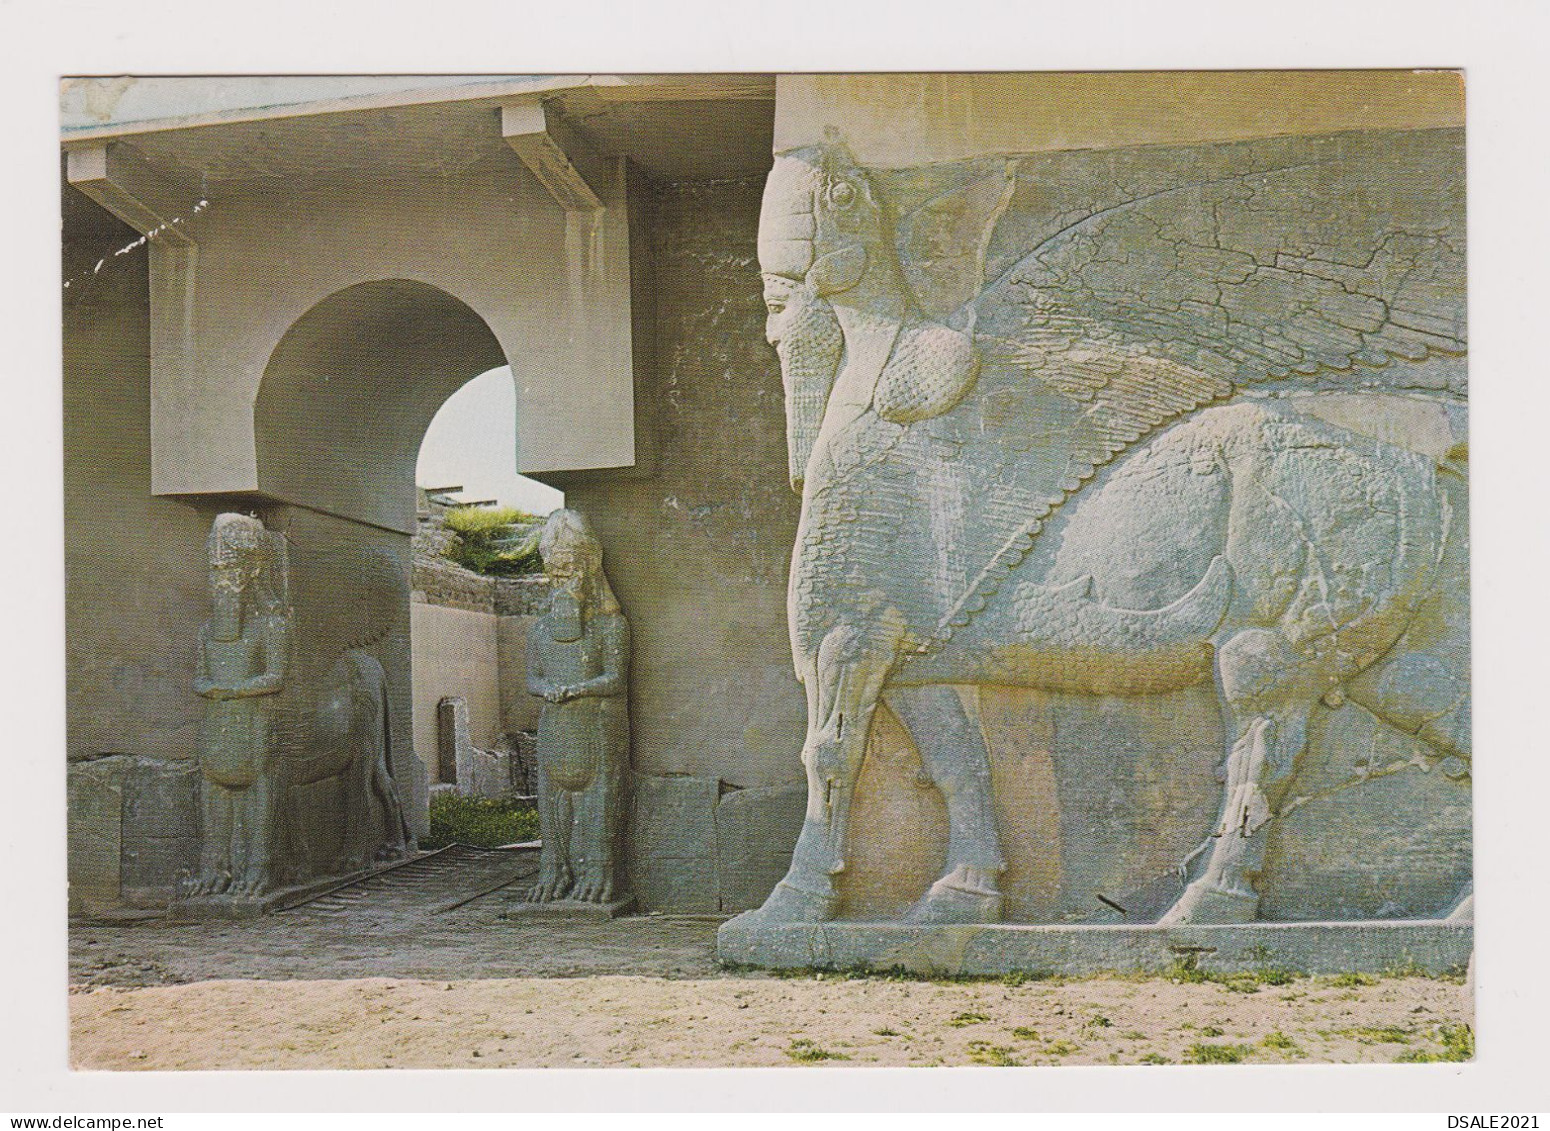 IRAQ Irak Nimrud-Kalhu-883 BC Ruins, View Vintage Photo Postcard RPPc (67939) - Iraq